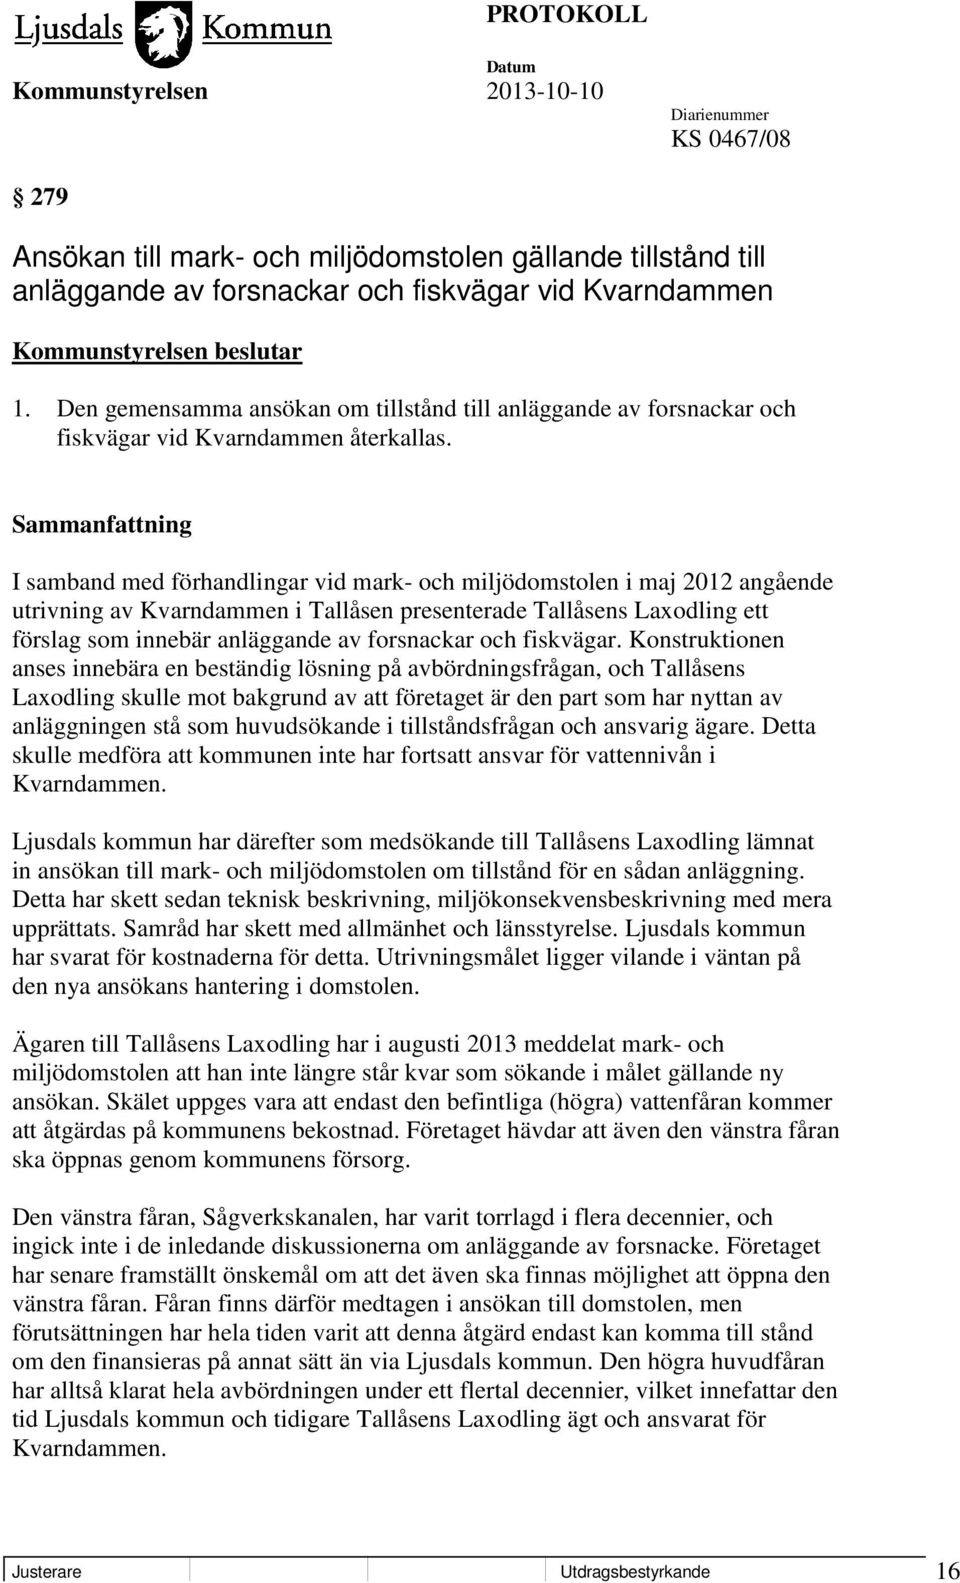 Sammanfattning I samband med förhandlingar vid mark- och miljödomstolen i maj 2012 angående utrivning av Kvarndammen i Tallåsen presenterade Tallåsens Laxodling ett förslag som innebär anläggande av